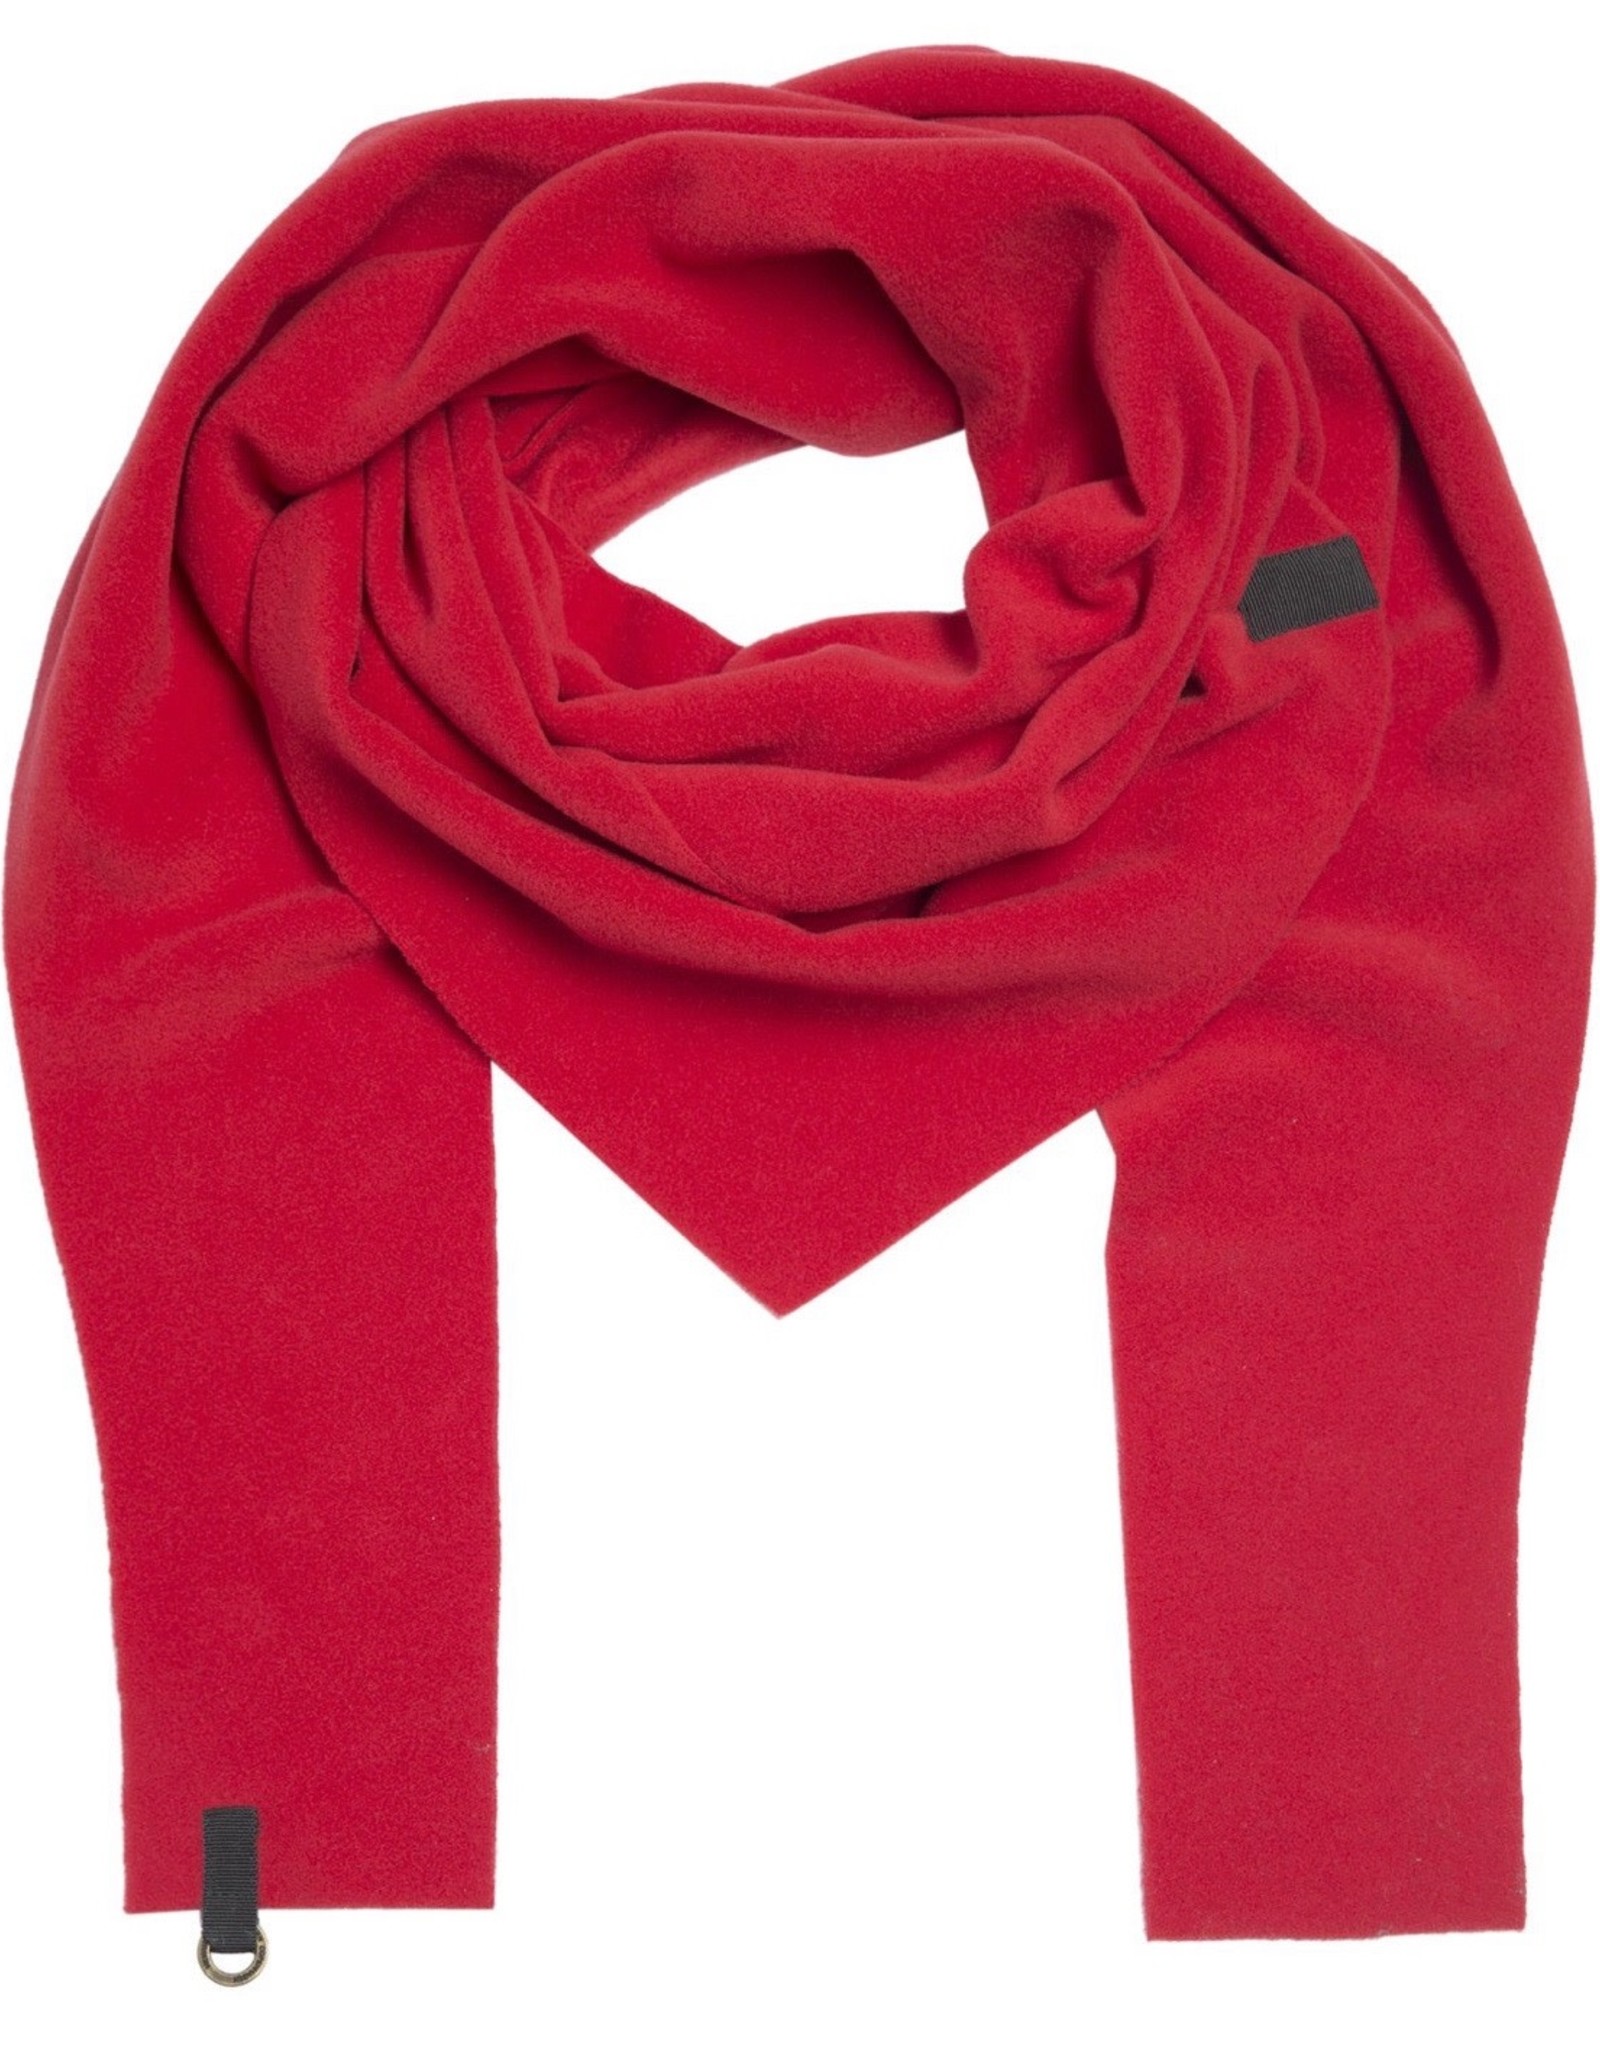 flicka fleece scarf - HS triangle 4051